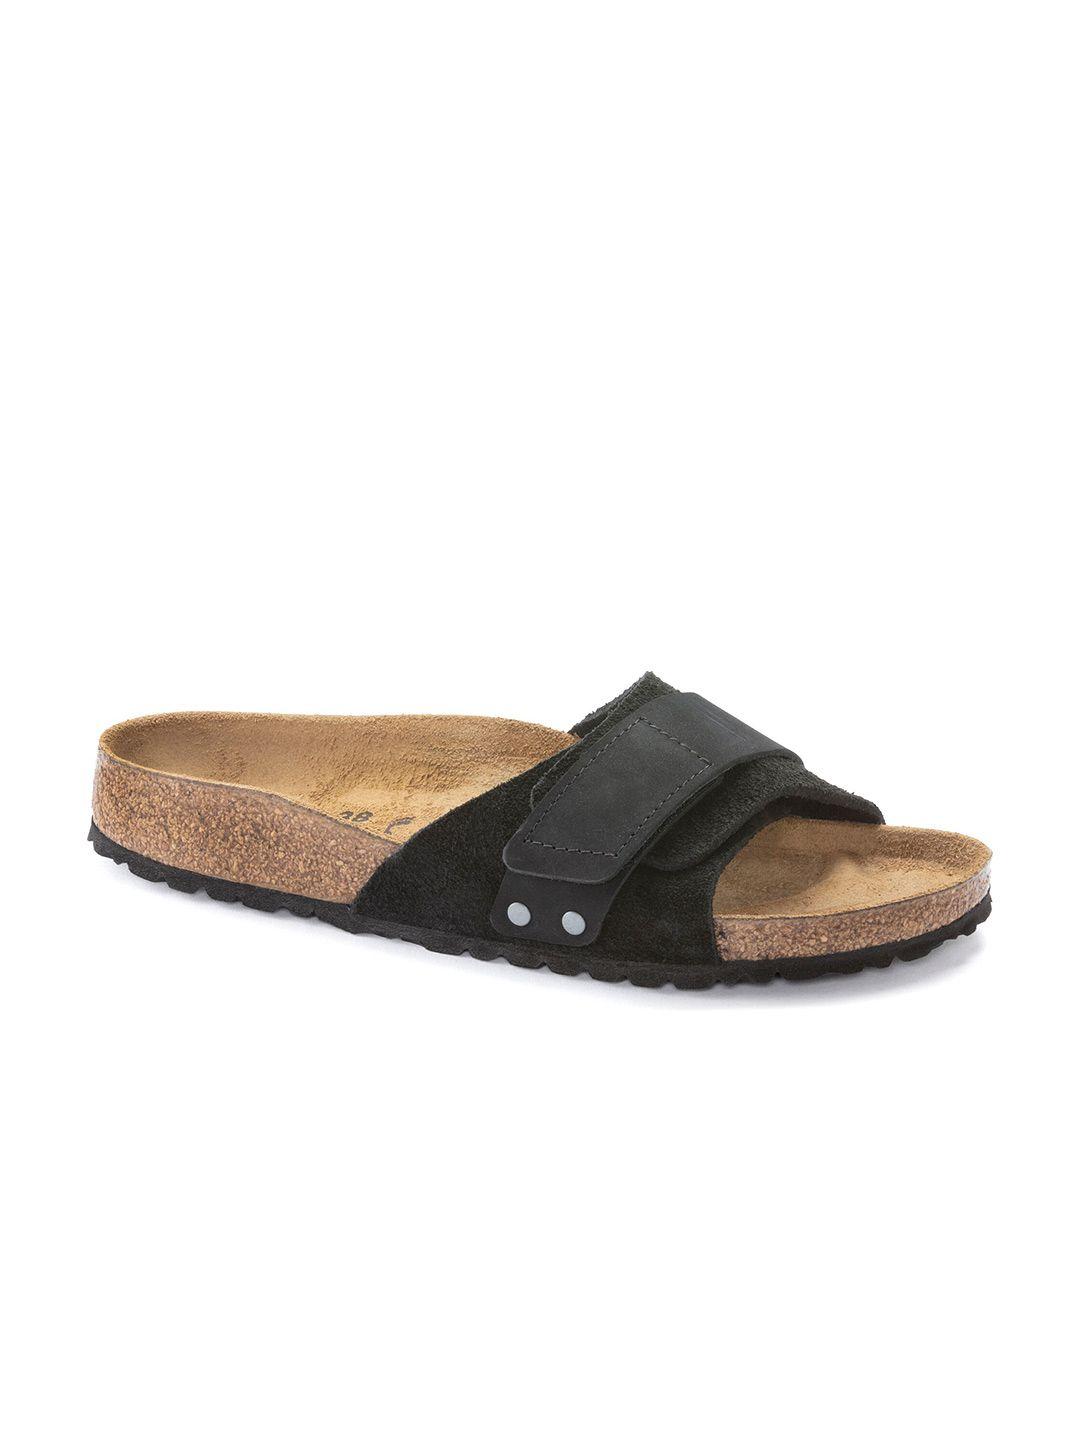 birkenstock oita narrow width suede leather one-strap open toe flats